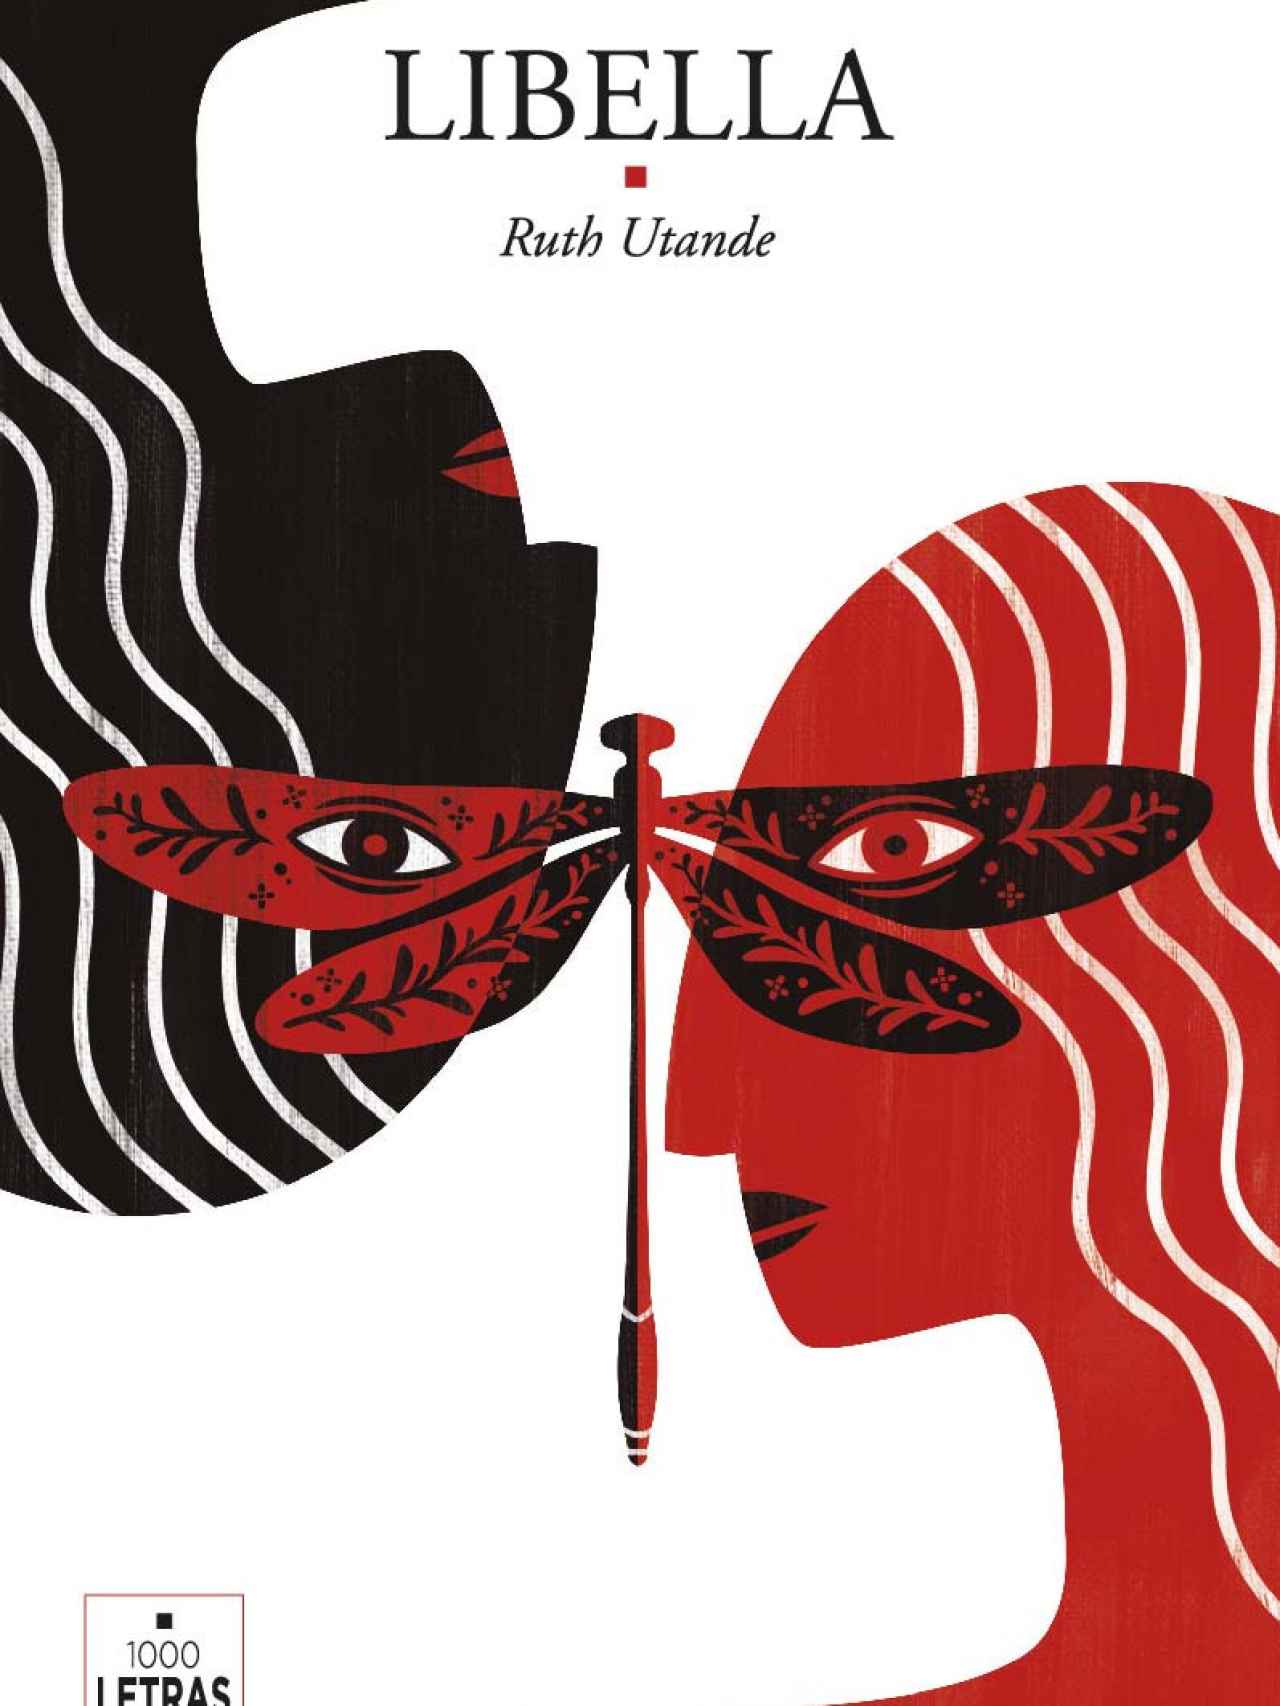 'Libella' es la tercera novela de Ruth Utande.